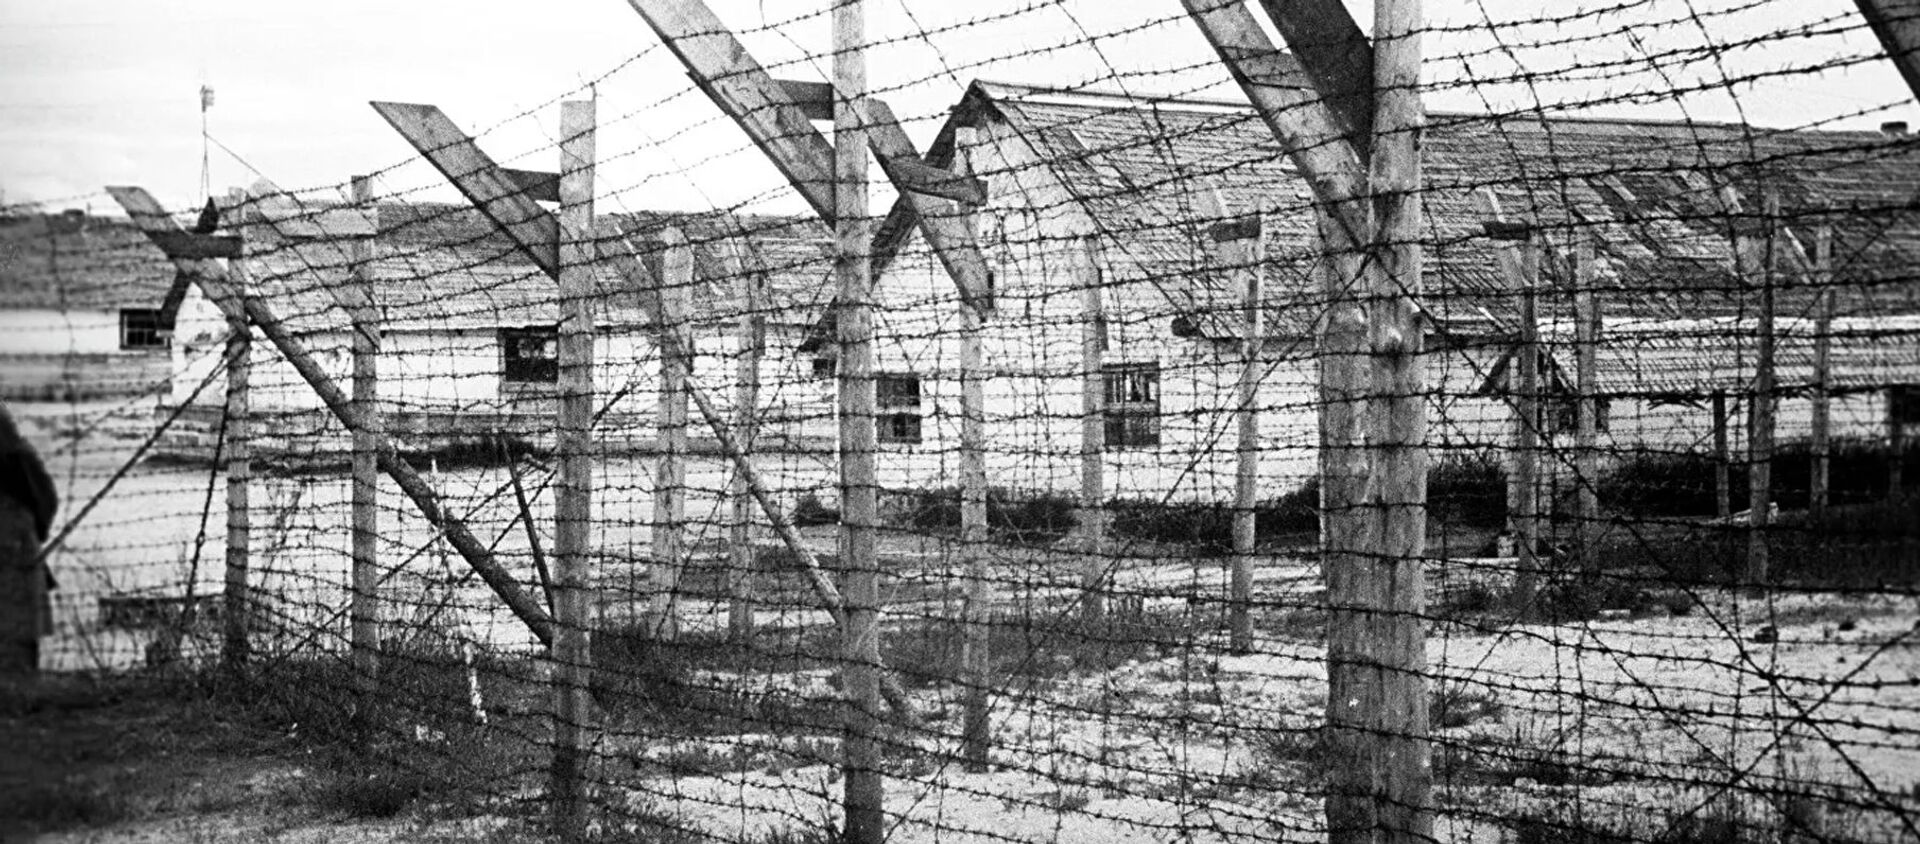 Финский концентрационный лагерь в городе Медвежьегорске, архивное фото - Sputnik Lietuva, 1920, 23.04.2020